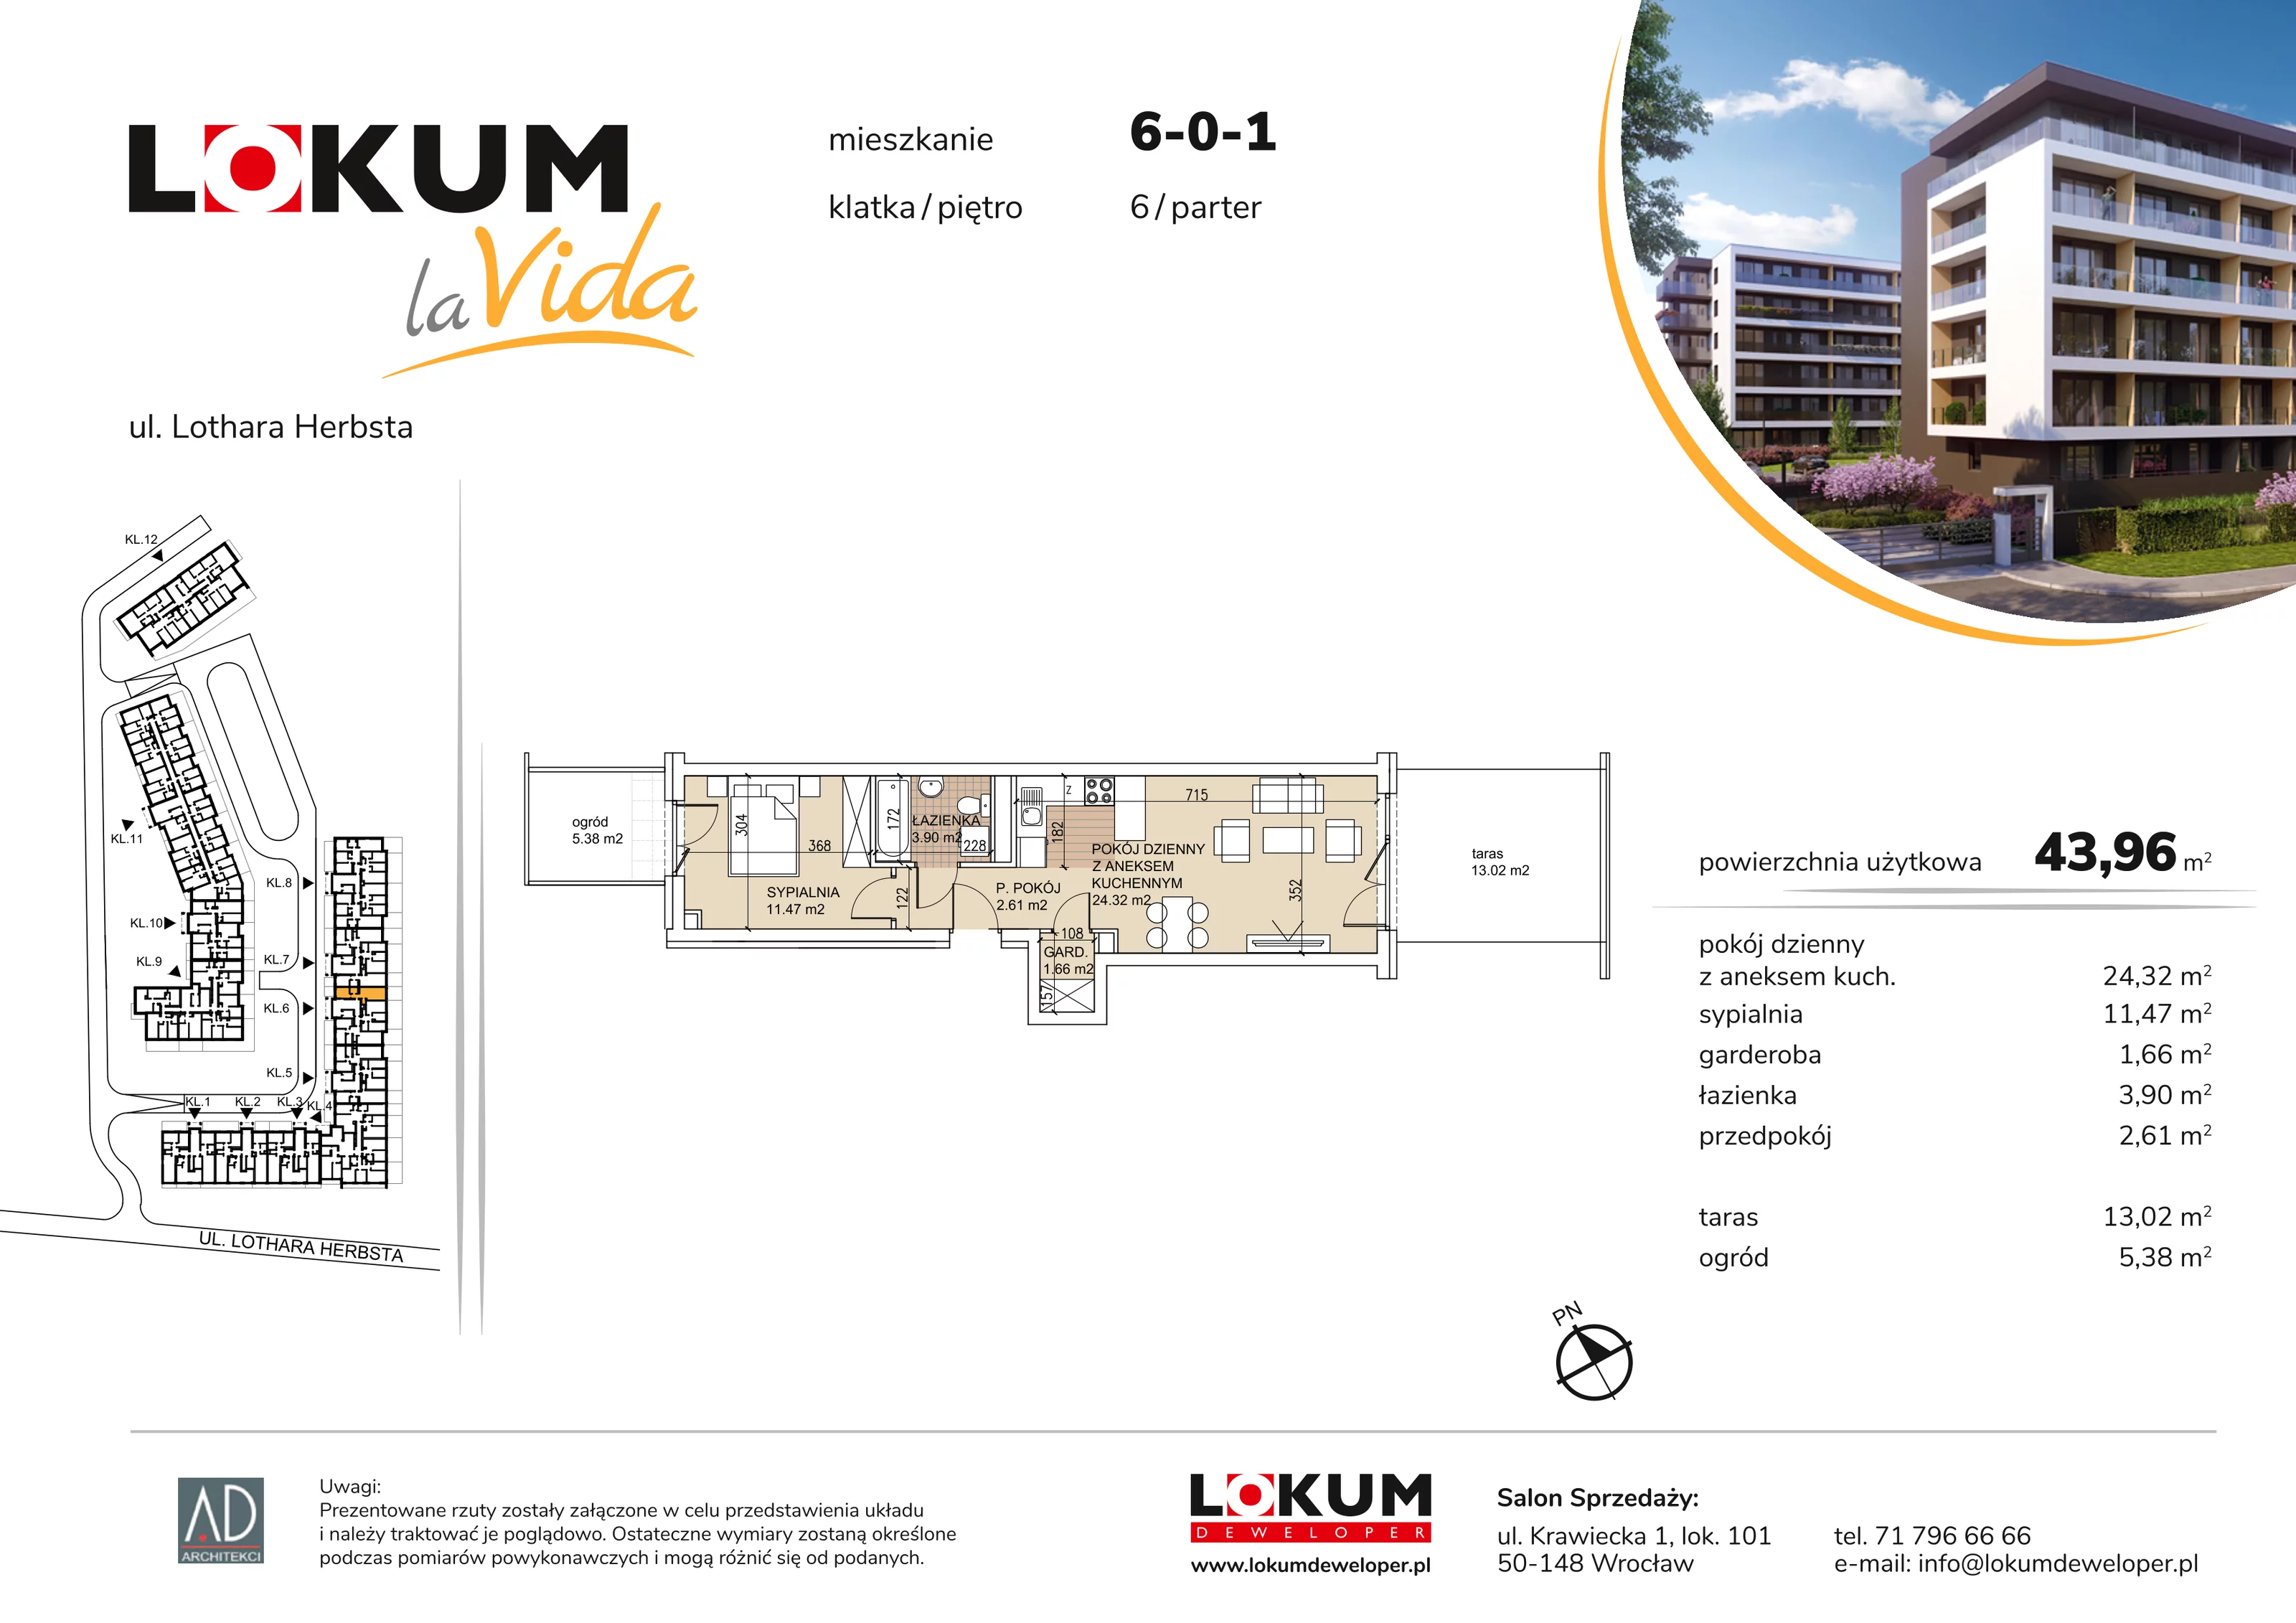 Mieszkanie 43,96 m², parter, oferta nr 6-0-1, Lokum la Vida, Wrocław, Sołtysowice, ul. Lothara Herbsta